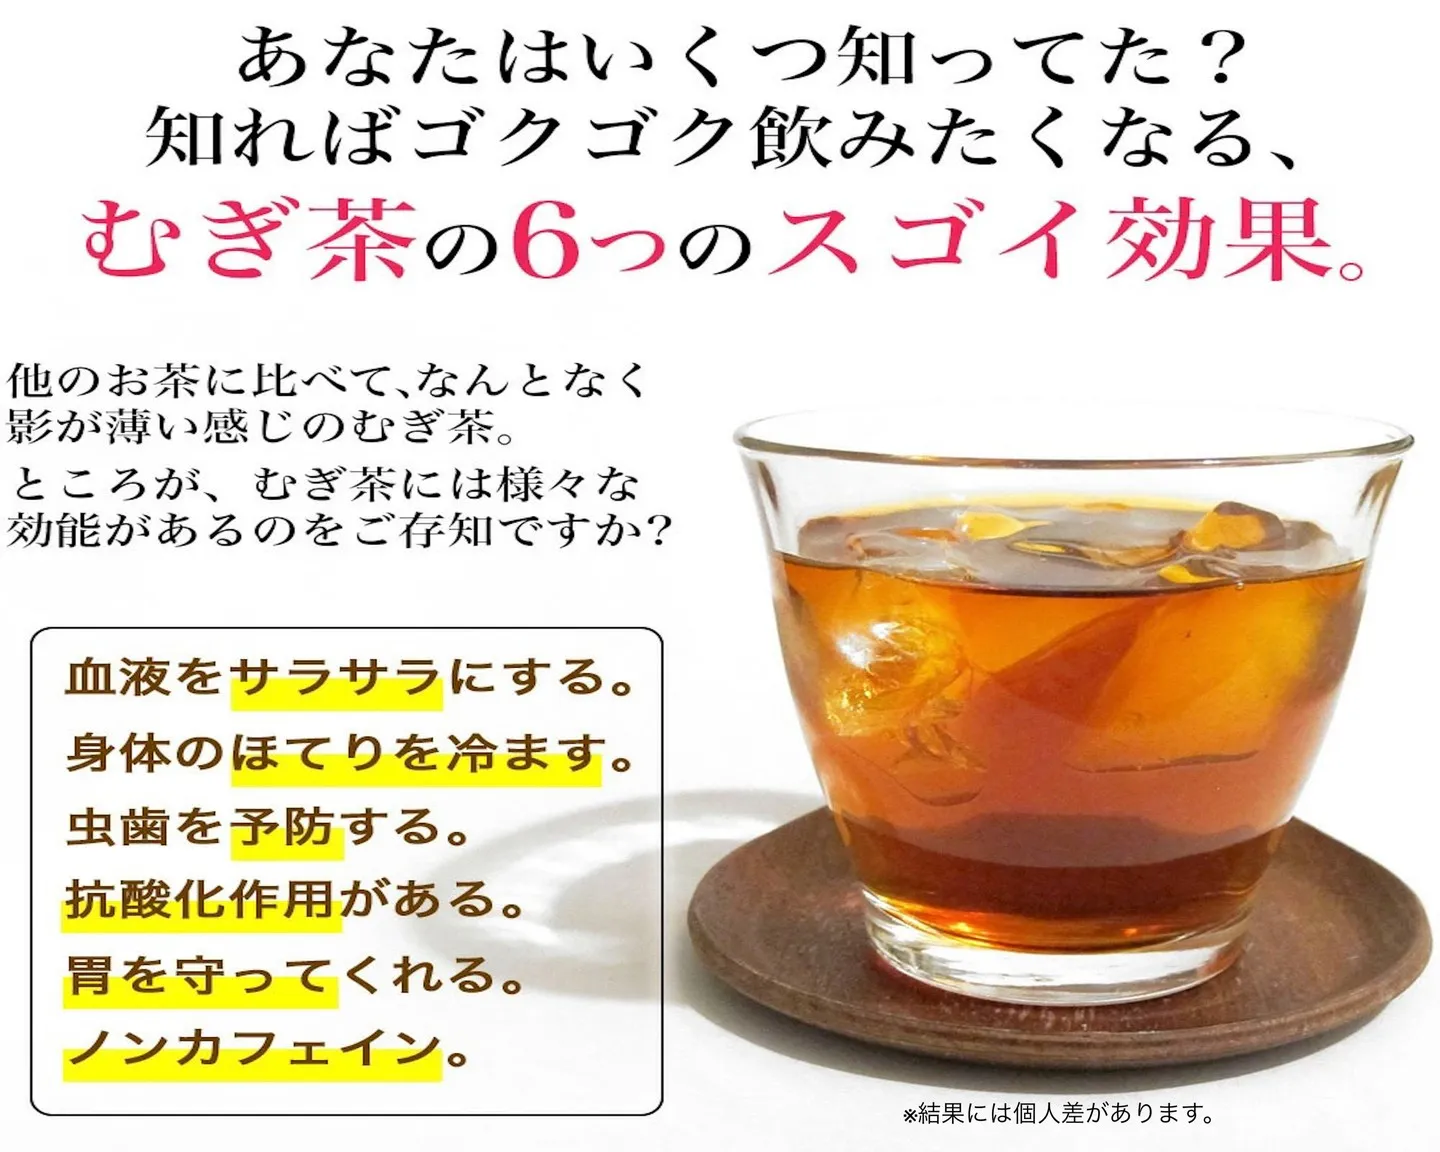 【姫路】美味しいこばファームの麦茶